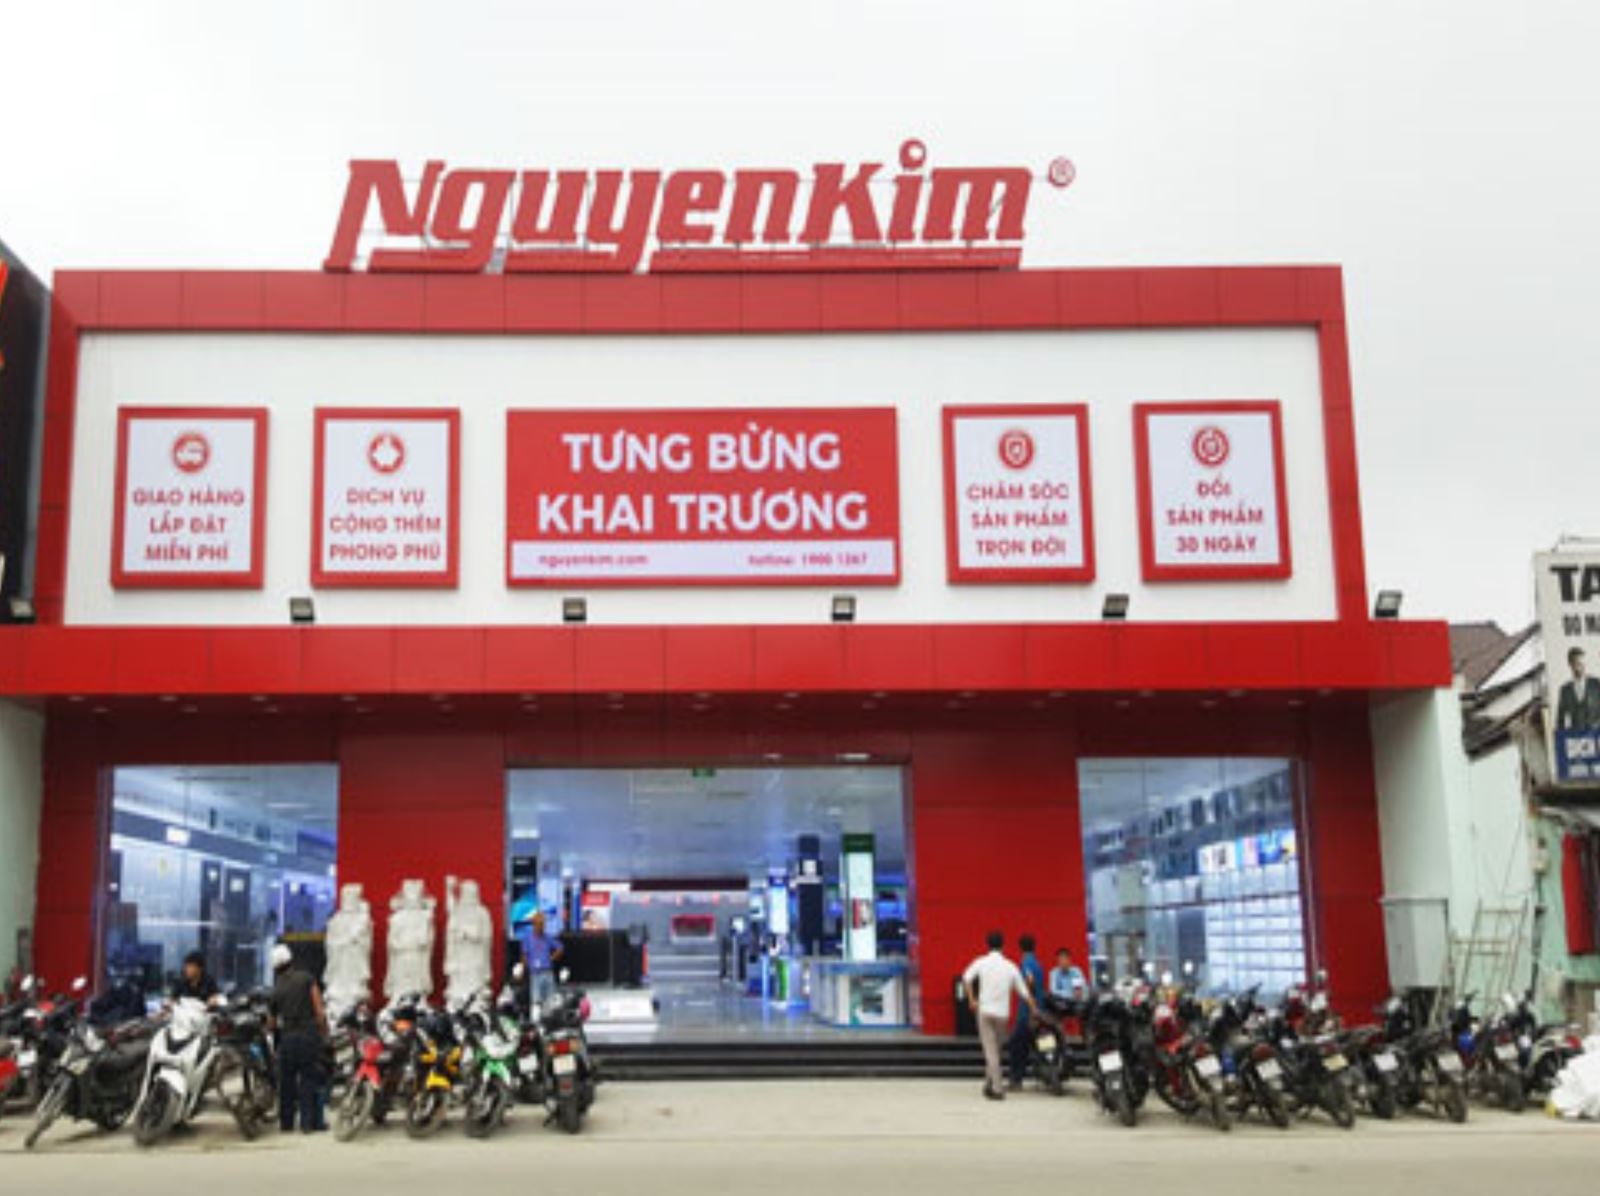 Điện máy Nguyễn Kim lên tiếng bác bỏ thông tin trốn thuế